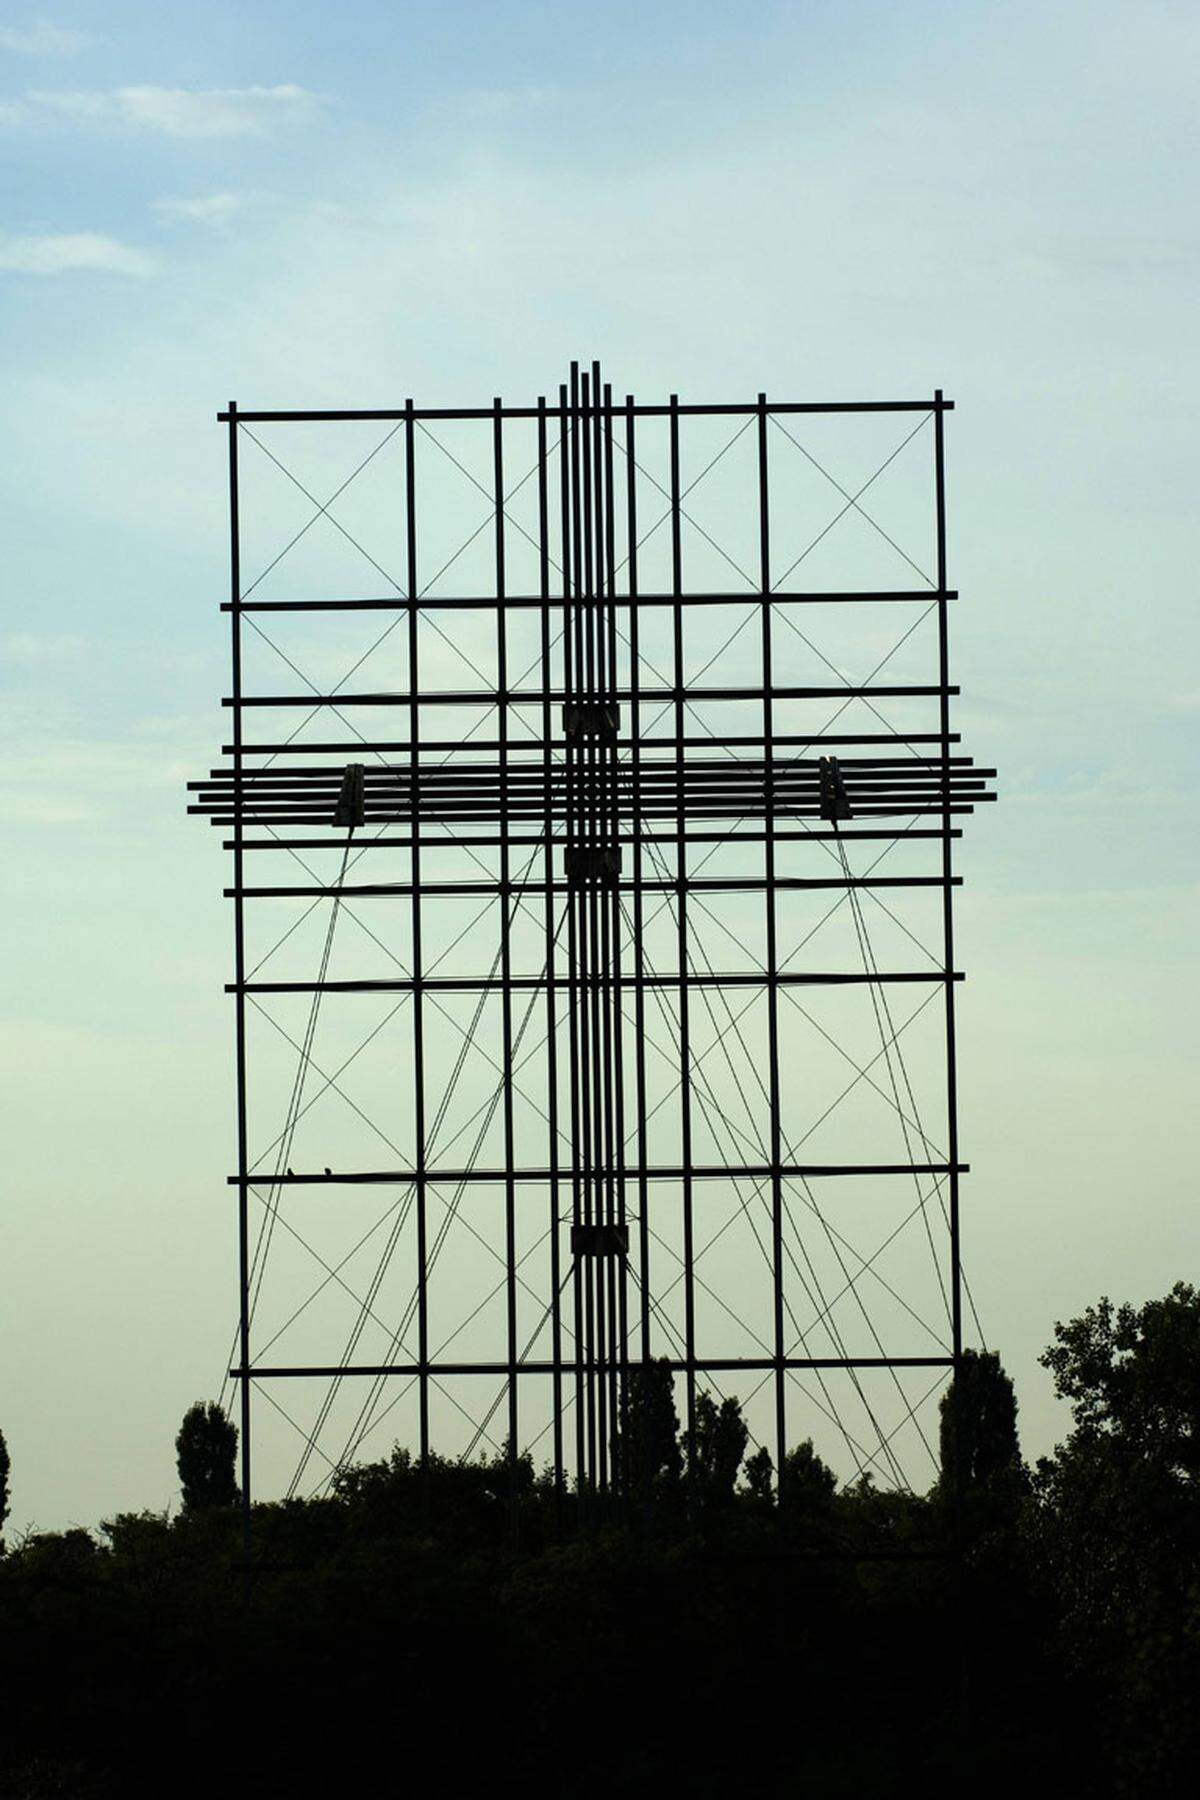 Anlässlich des Papst-Besuchs wurde ein 40 Meter hohes und 56 Tonnen schweres Stahlkreuz aufgestellt. Im Sommer 2010 stand der Abriss im Raum. Nachdem vor allem die "Kronen Zeitung" die drohende "Fällung" zum Thema gemacht hatte, setzten sich Kardinal Schönborn und Bürgermeister Häupl für die Erhaltung ein. Im Juni 2012 wurde das renovierte Kreuz gesegnet.